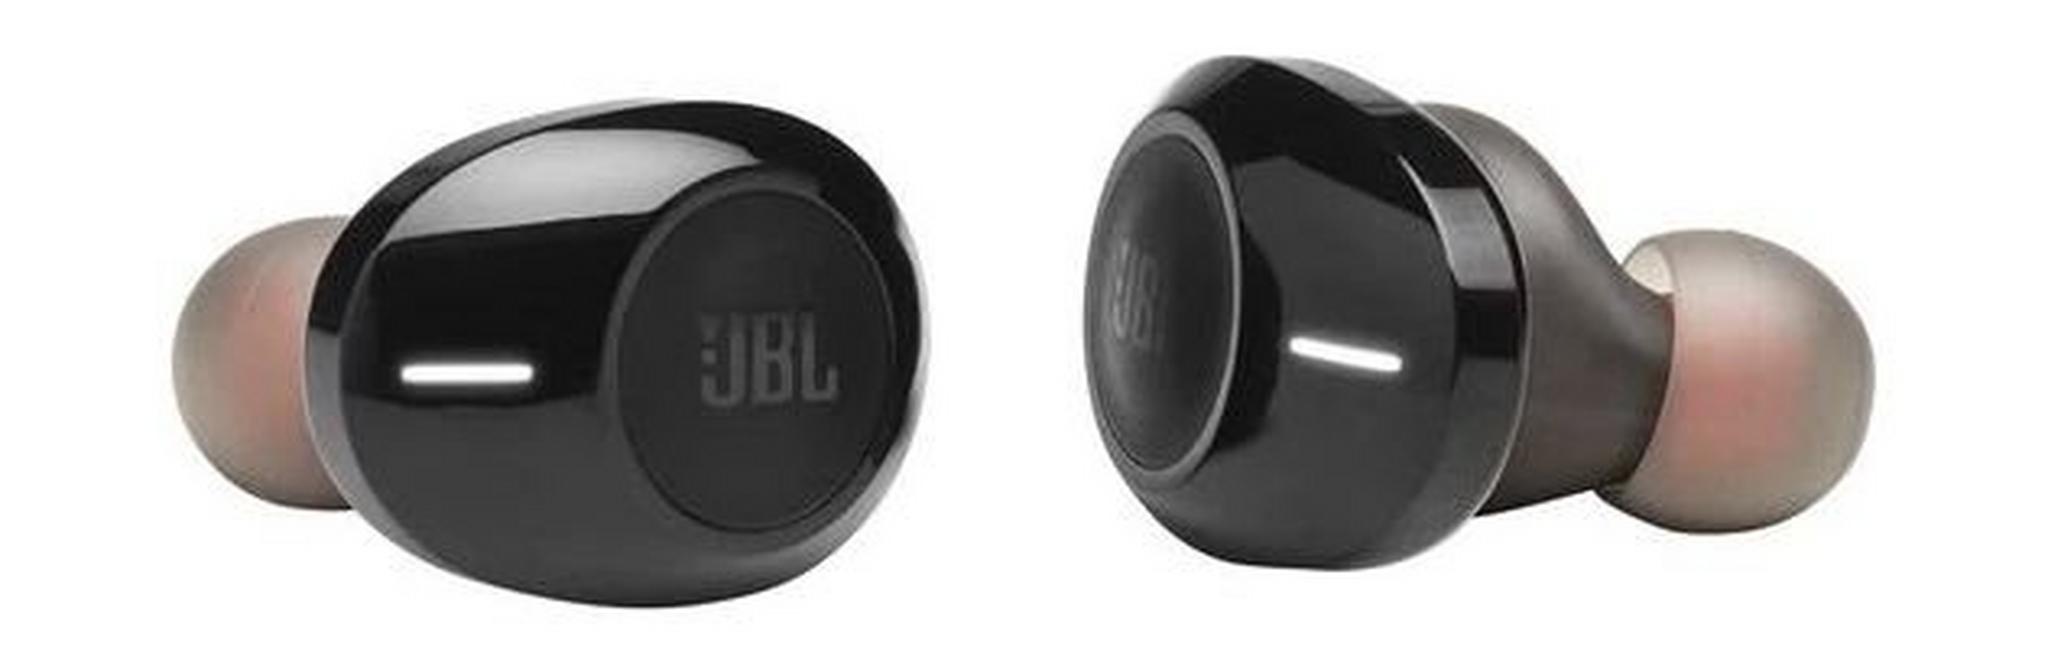 JBL TUNE 120TWS Wireless In-ear Headphones - Black